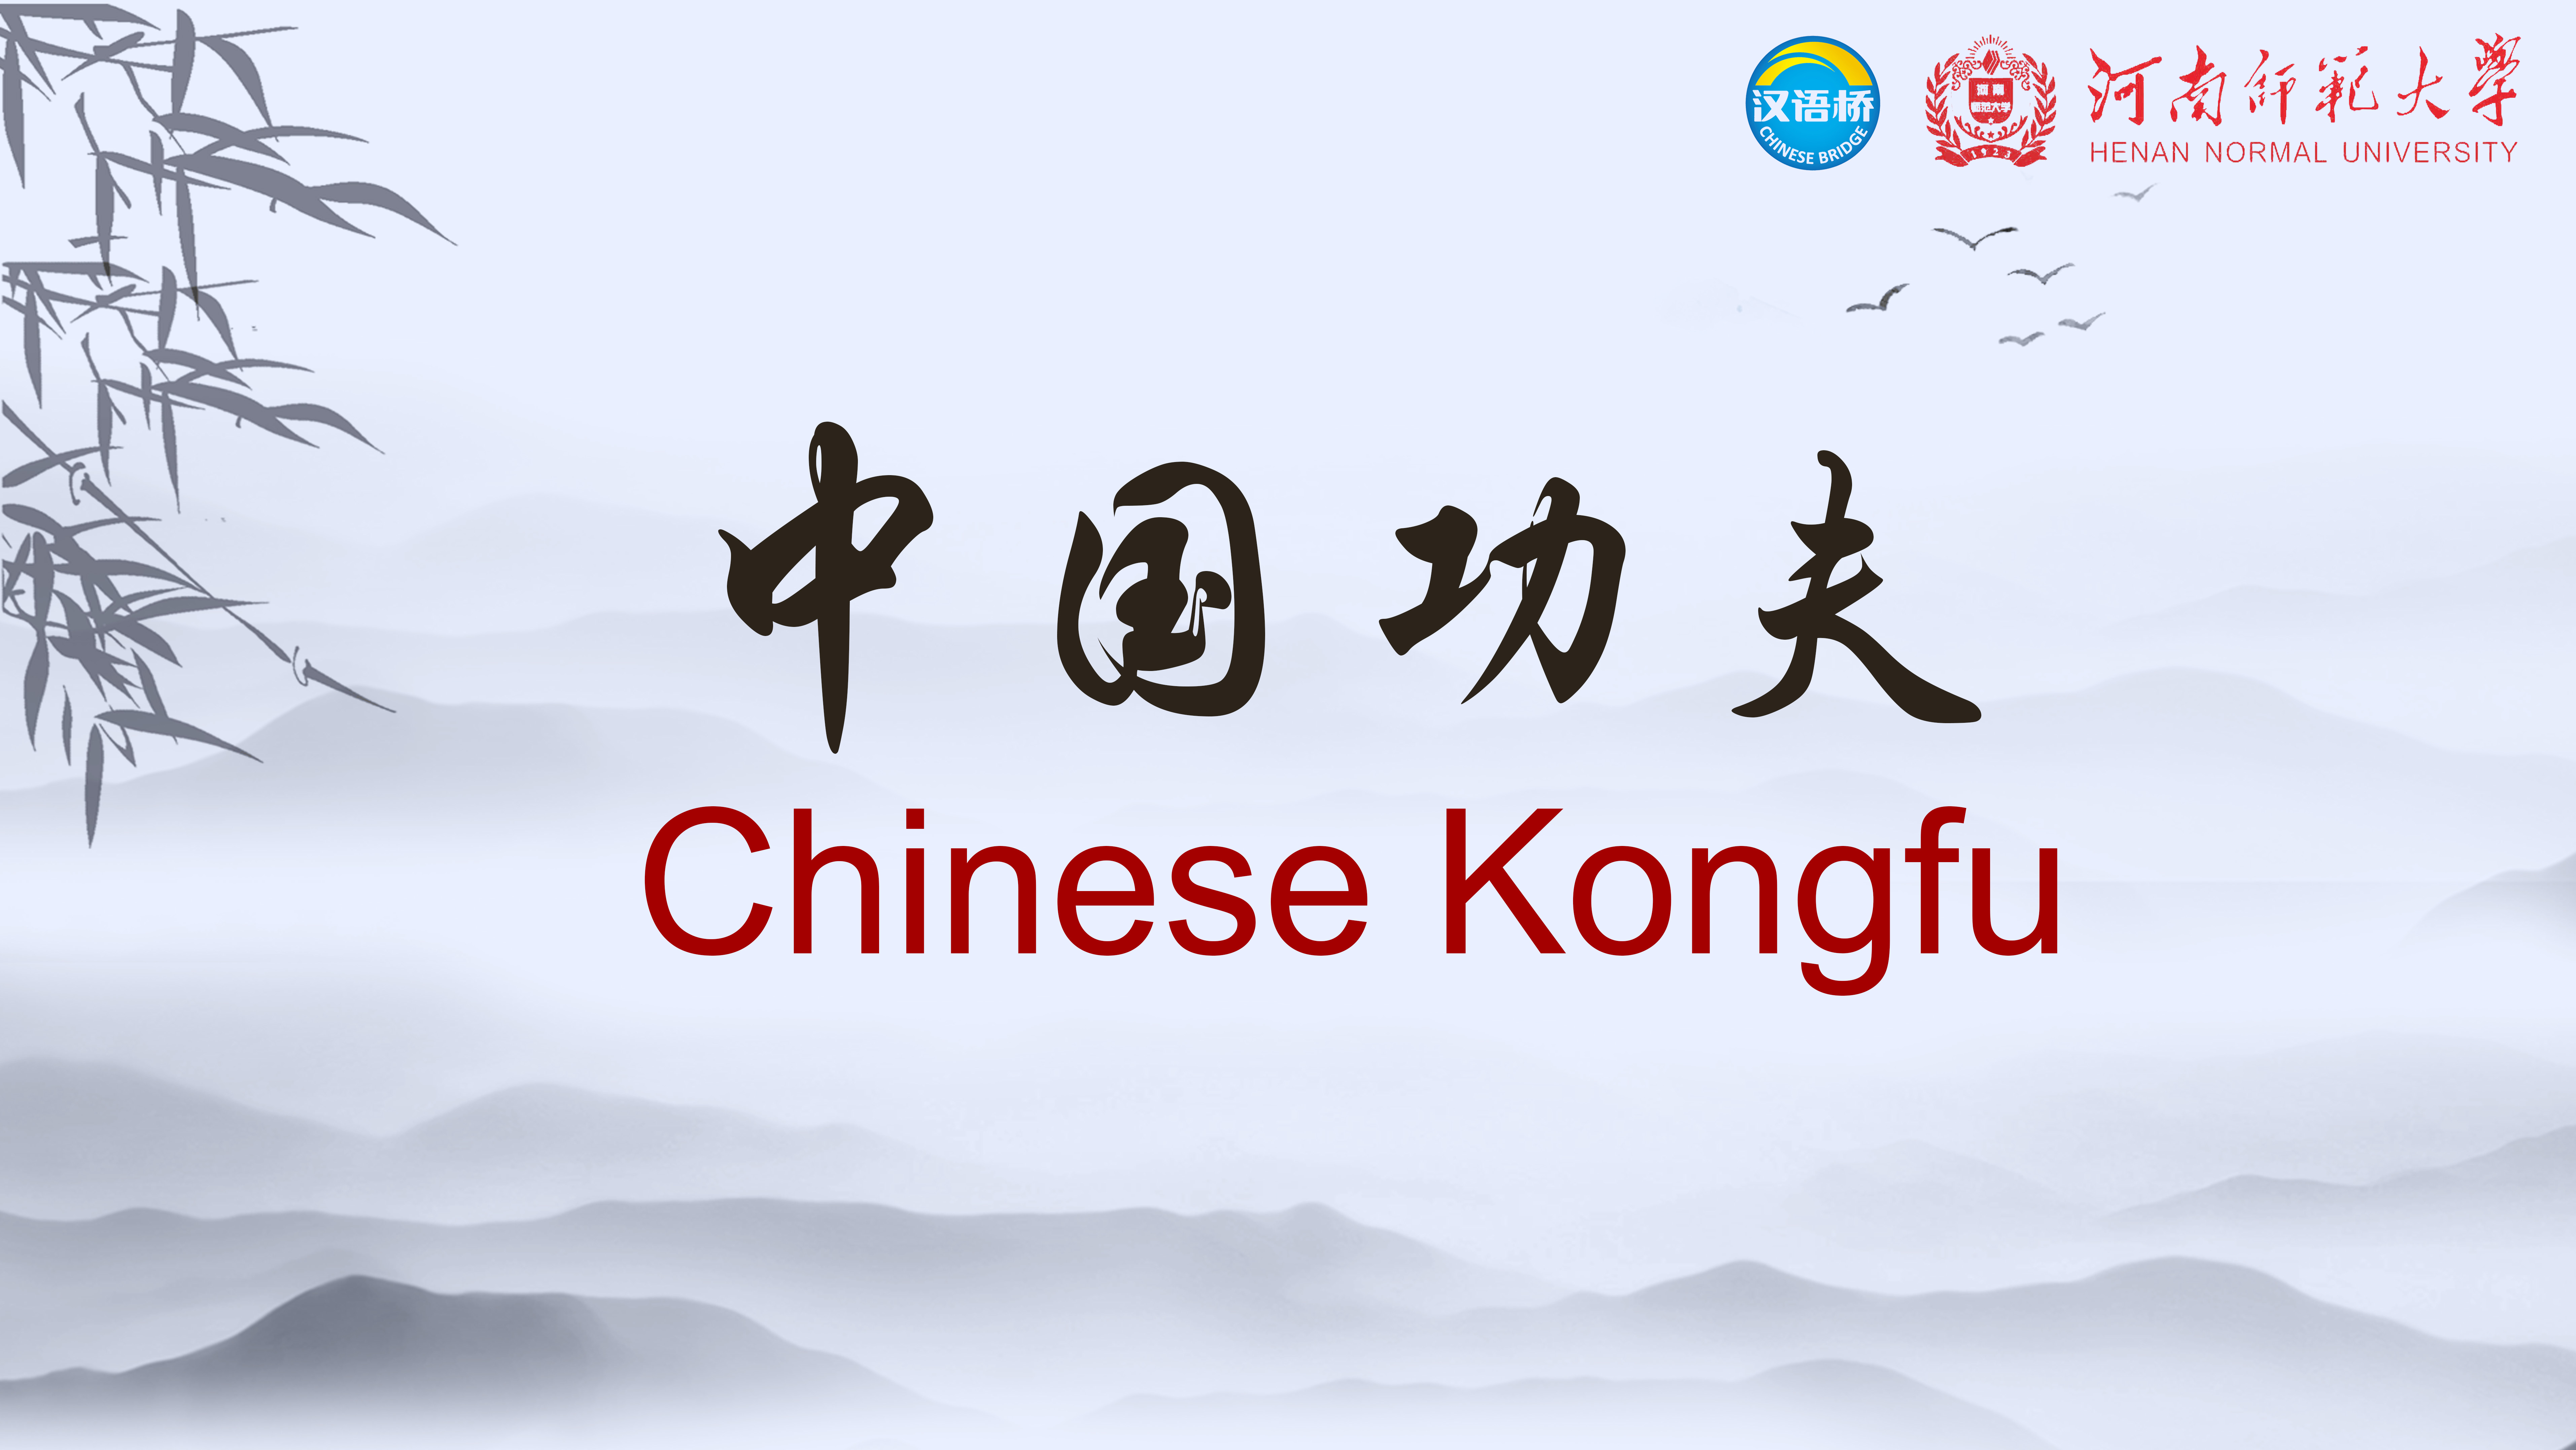 Chinese Kongfu